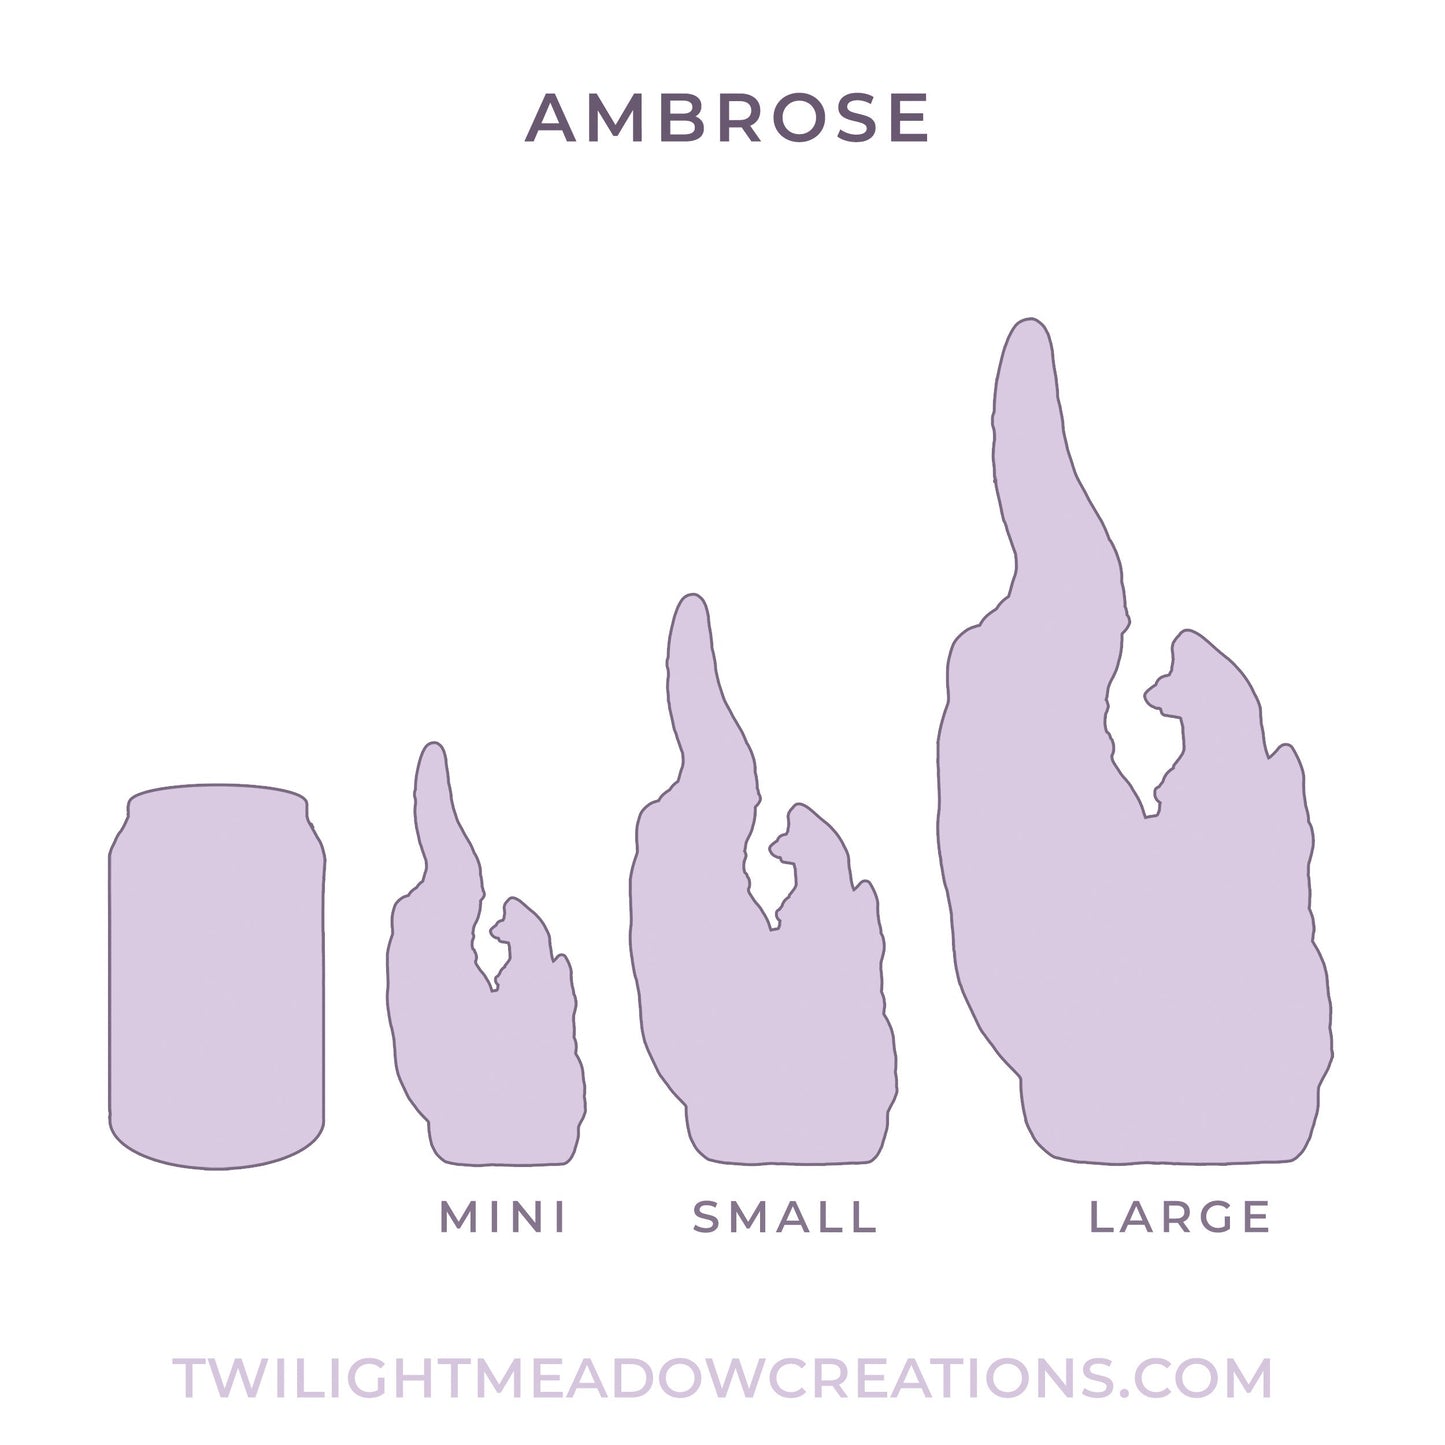 Mini Ambrose (Firmness: Soft)